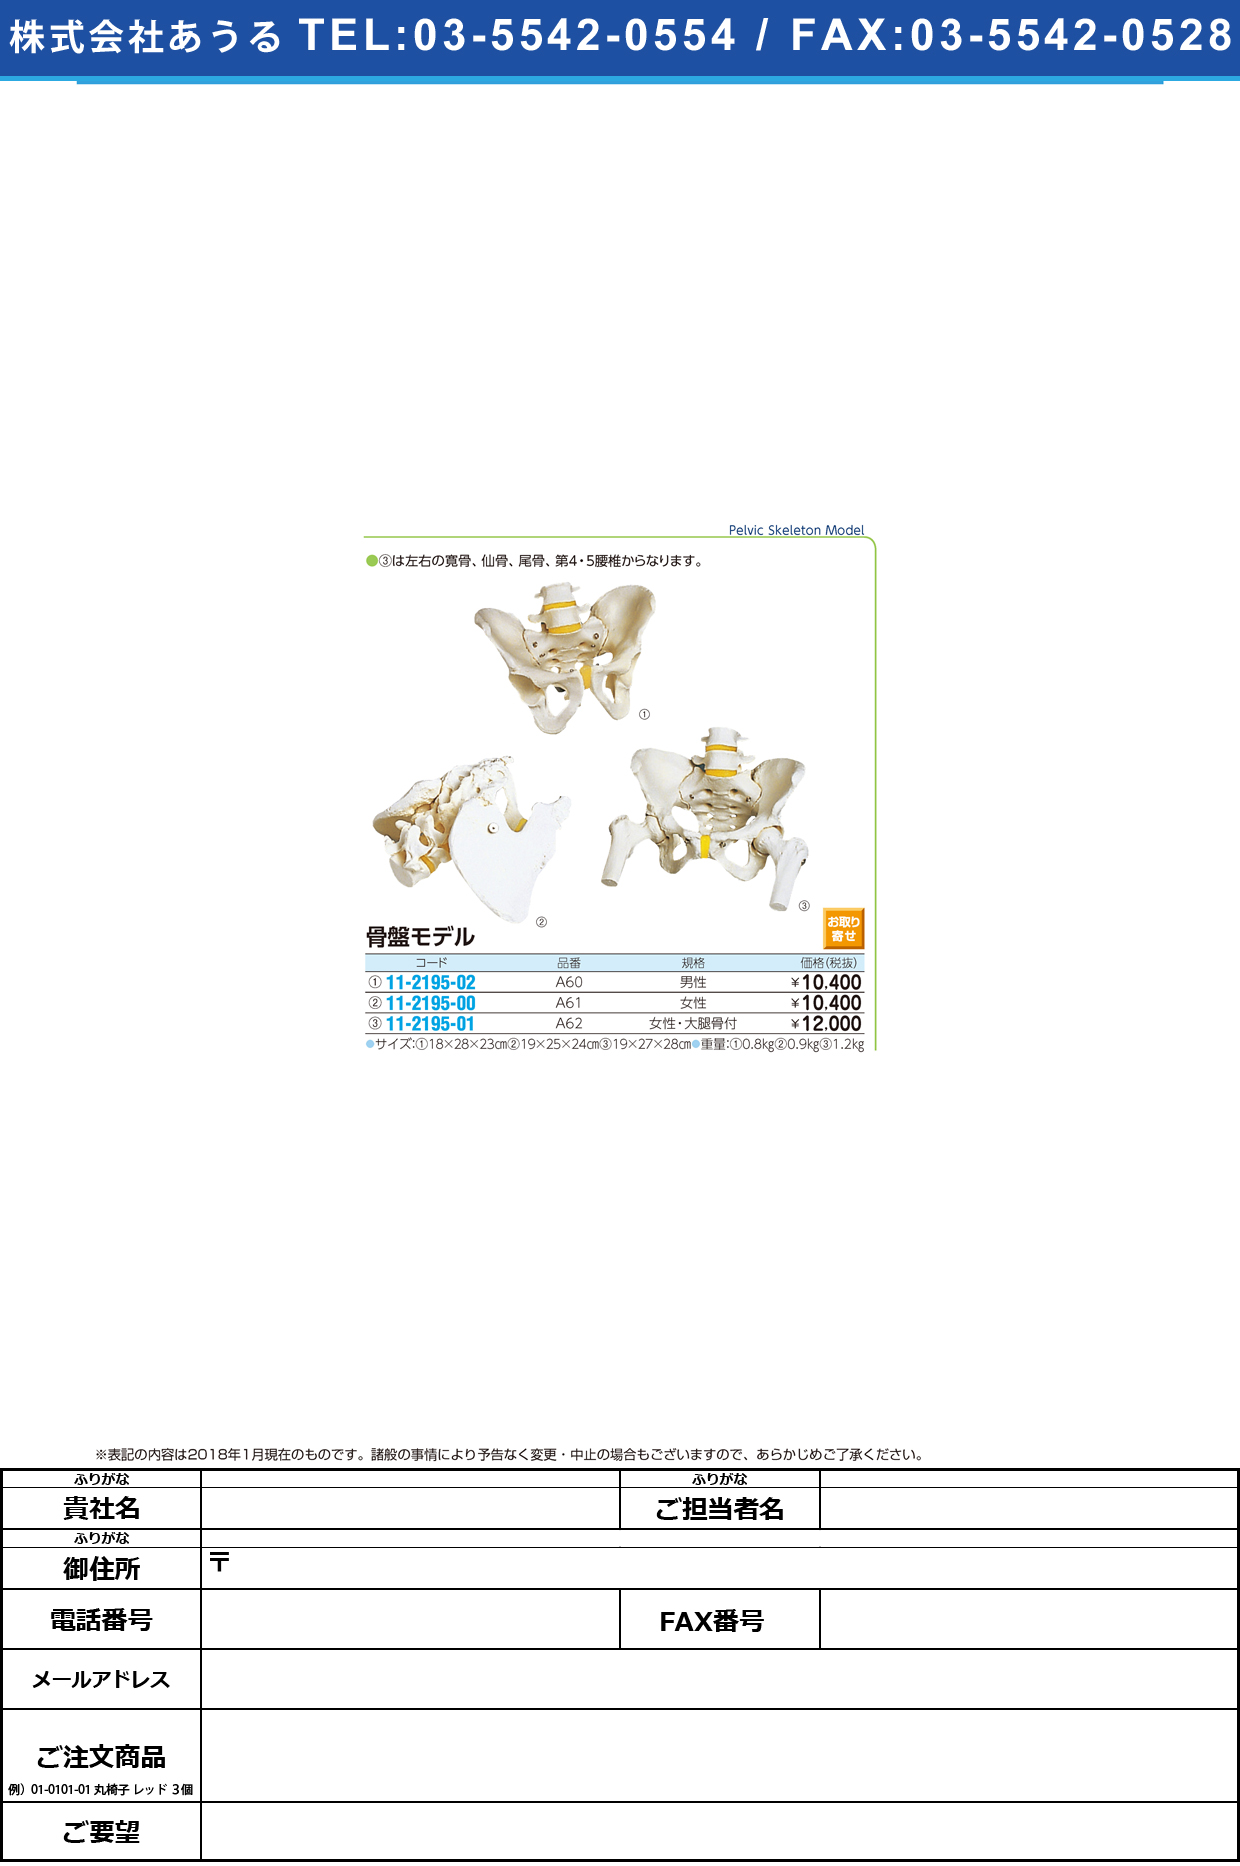 (11-2195-00)骨盤モデル（女性） A61(19X25X24CM) ｺﾂﾊﾞﾝﾓﾃﾞﾙ(京都科学)【1台単位】【2018年カタログ商品】